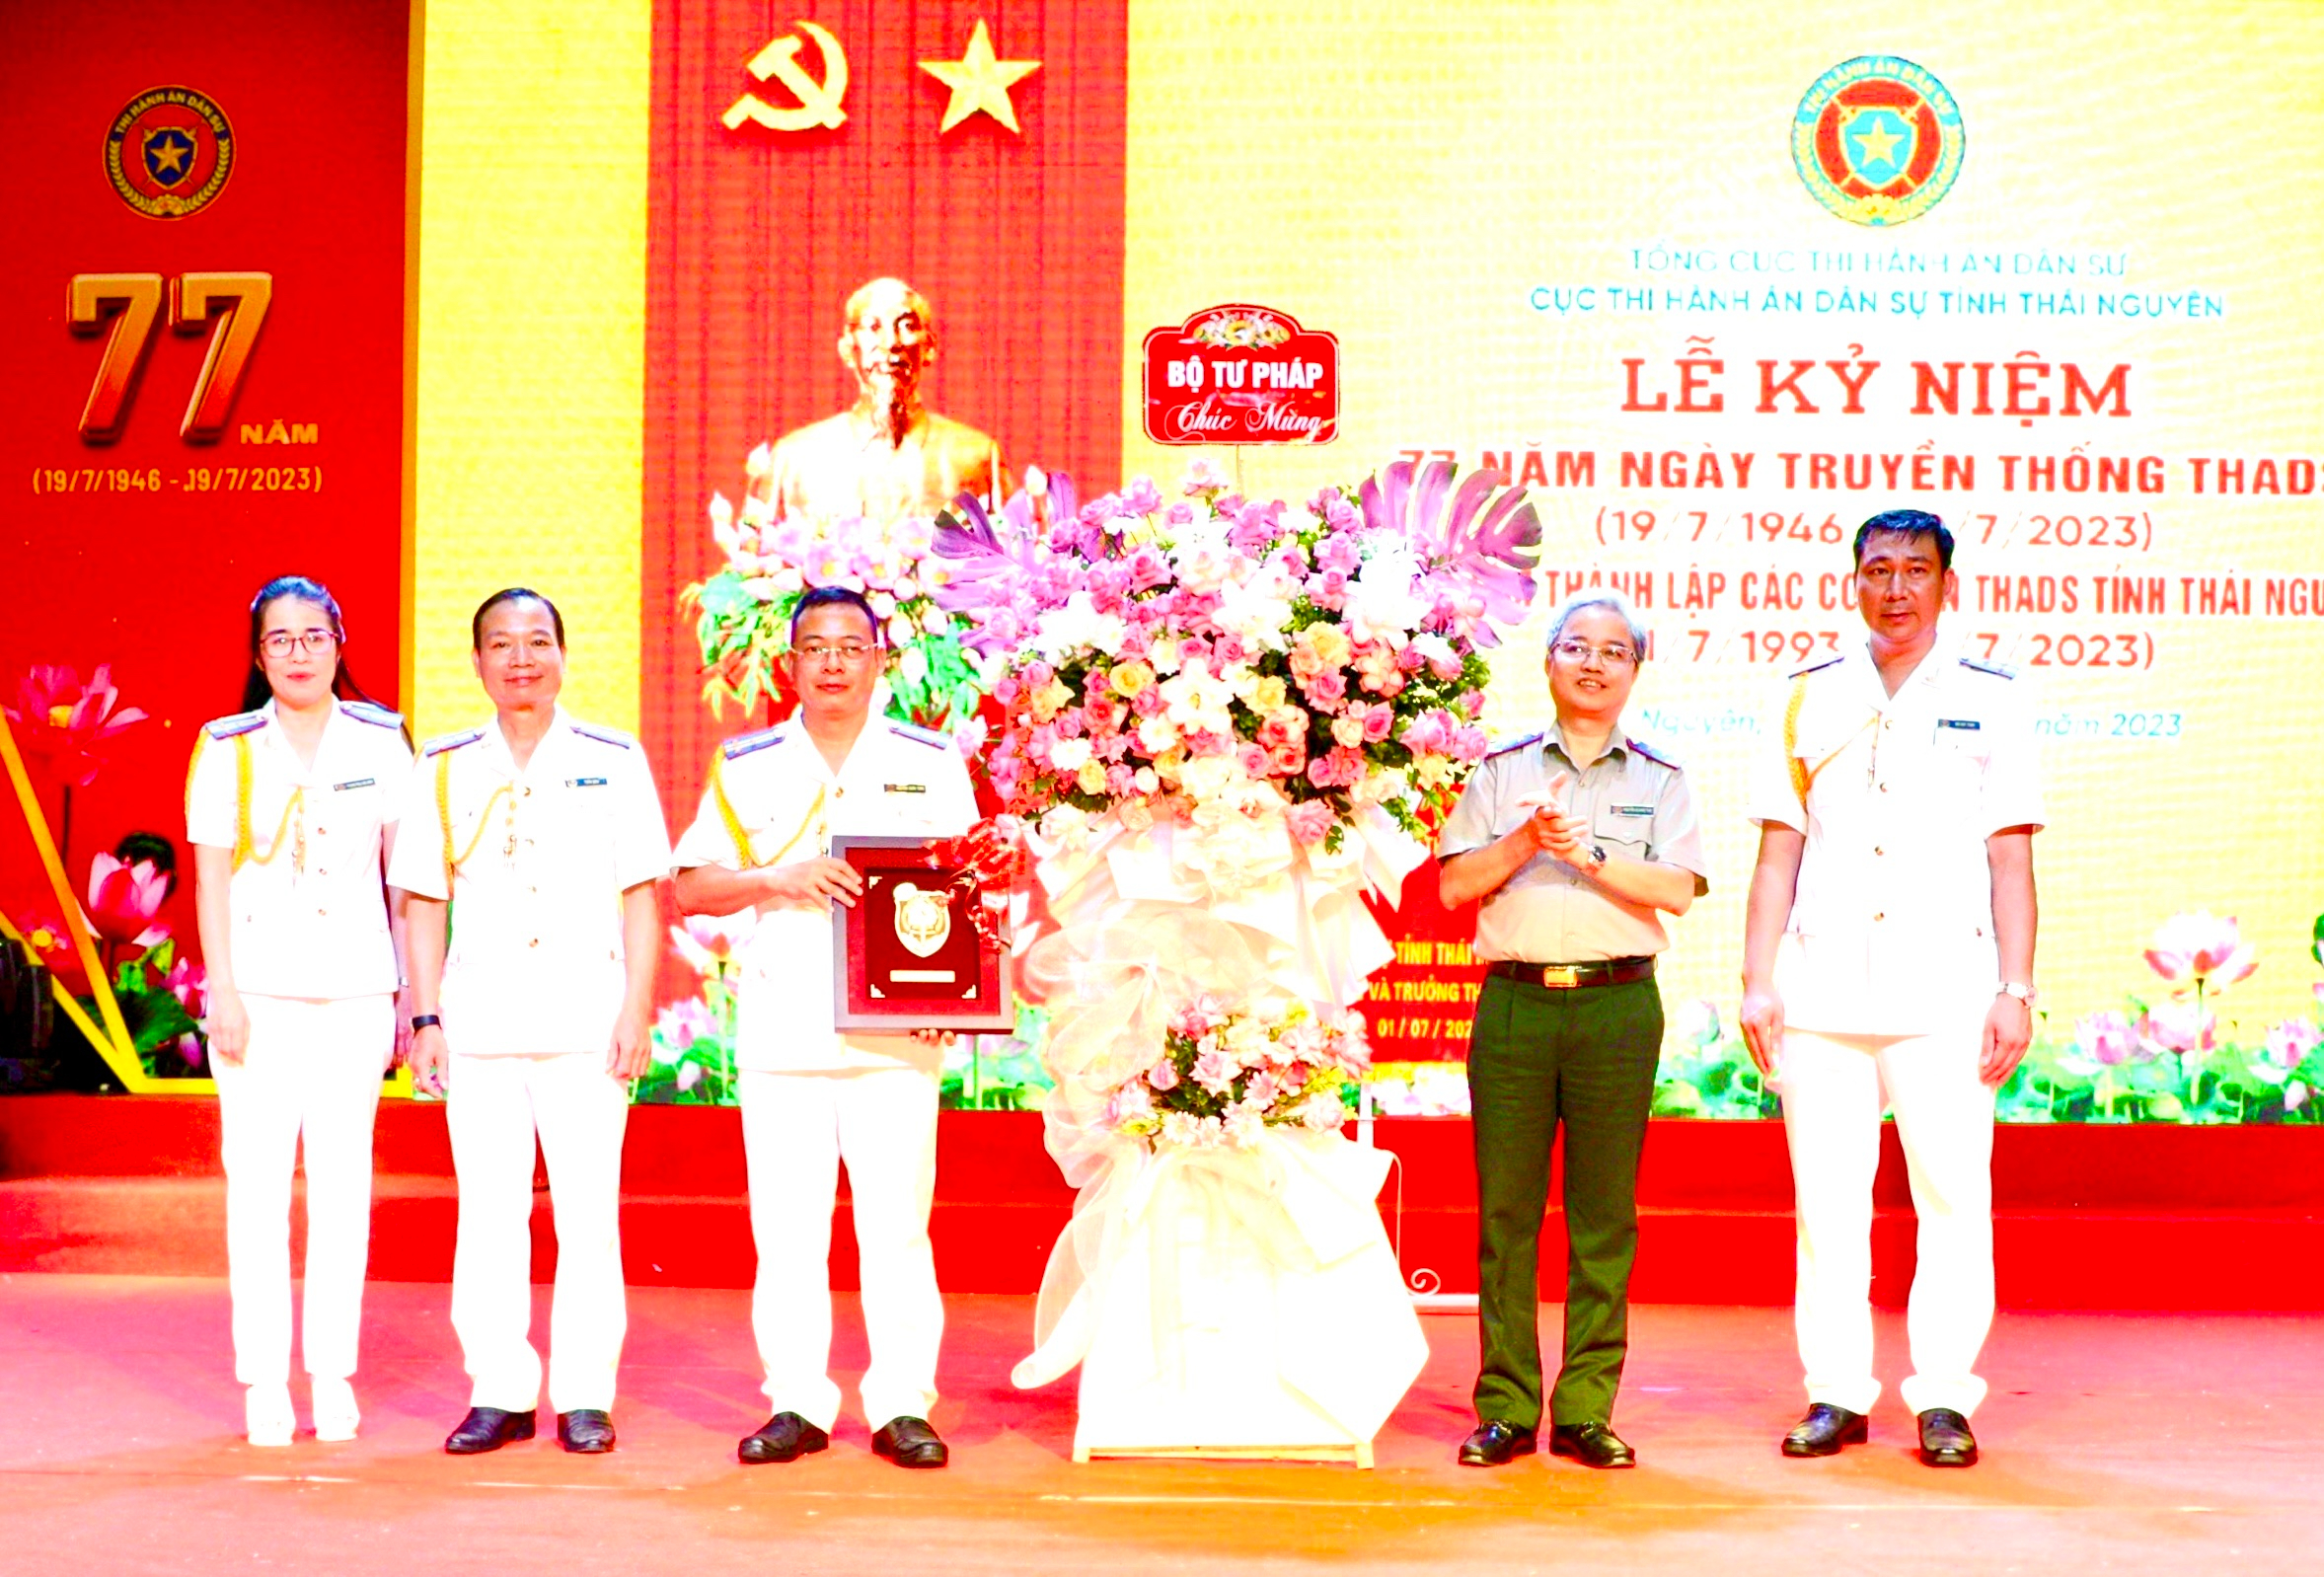 Tổng cục trưởng Nguyễn Quang Thái tham dự lễ kỷ niệm 77 năm ngày truyền thống THADS và 30 năm thành lập các cơ quan THADS tỉnh Thái Nguyên